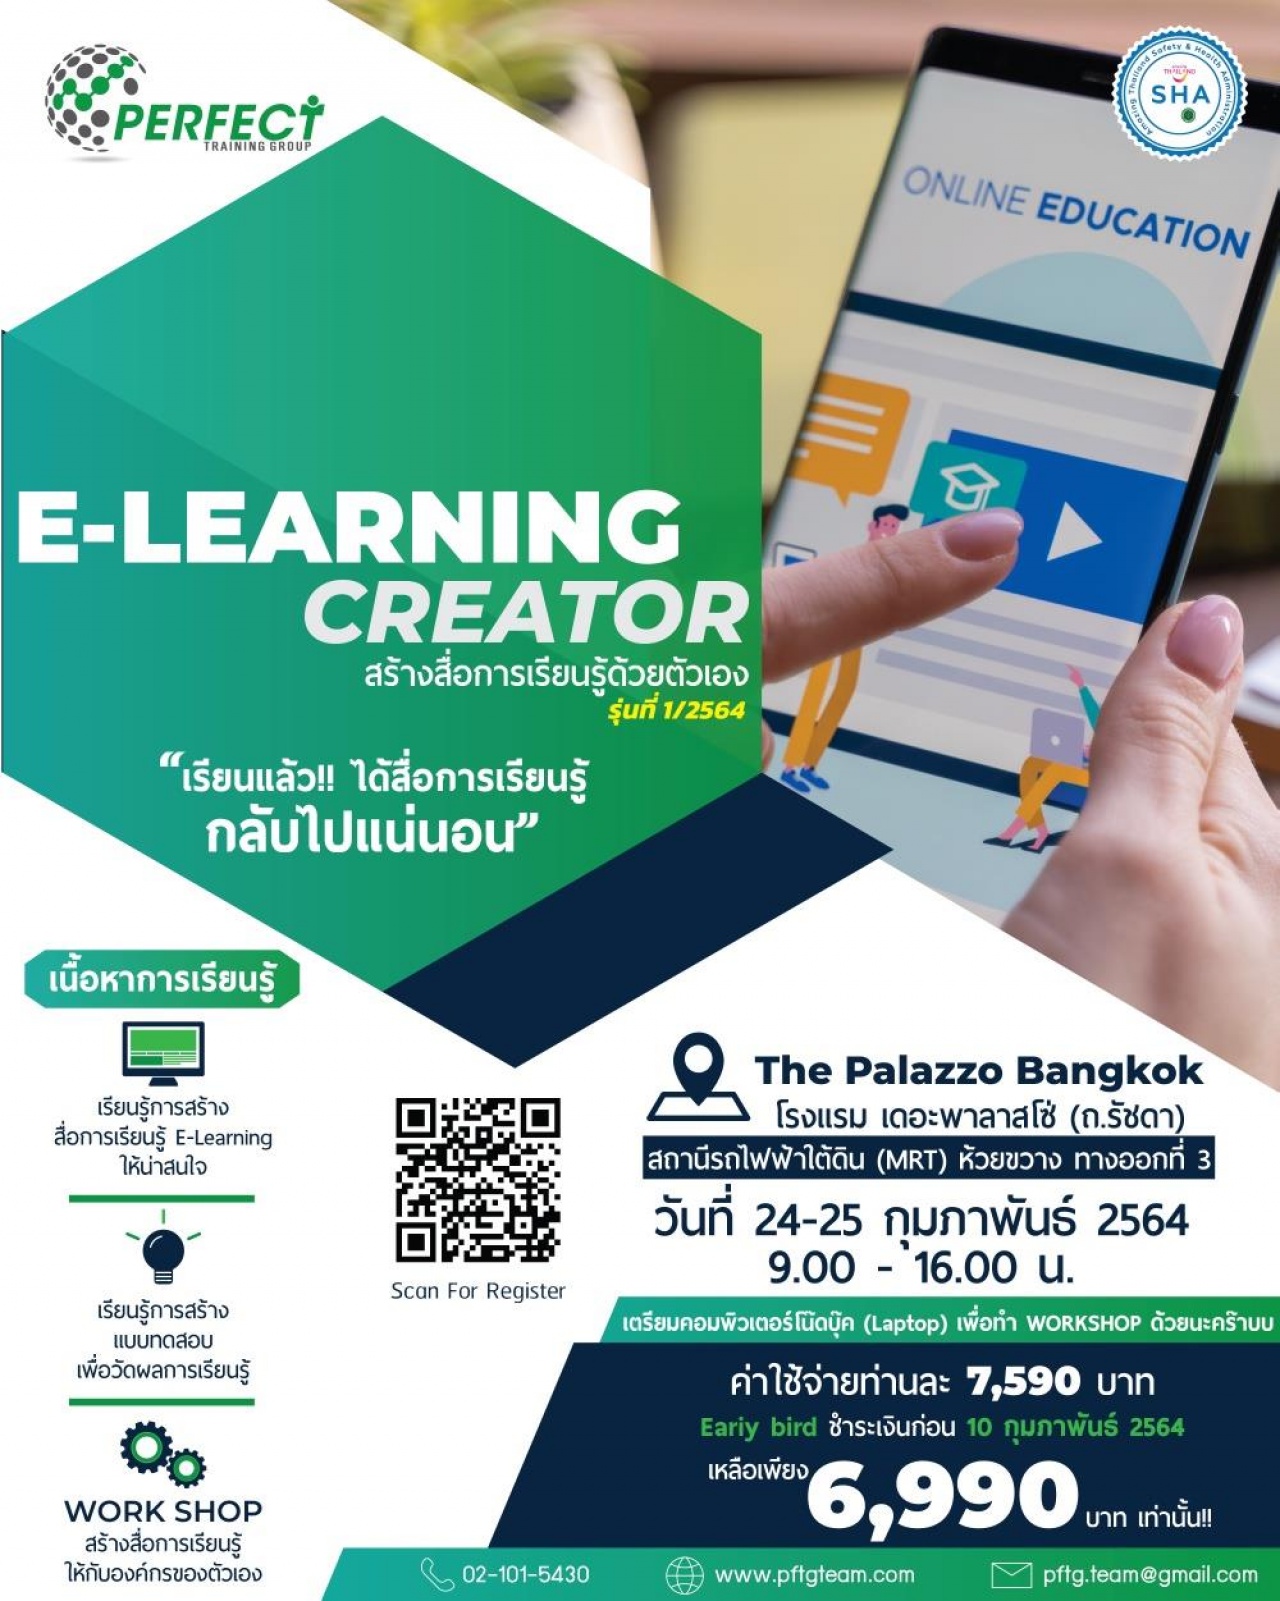 E-Learning Creator ทำสื่อการเรียนรู้ด้วยตัวเอง รุ่นที่ 2